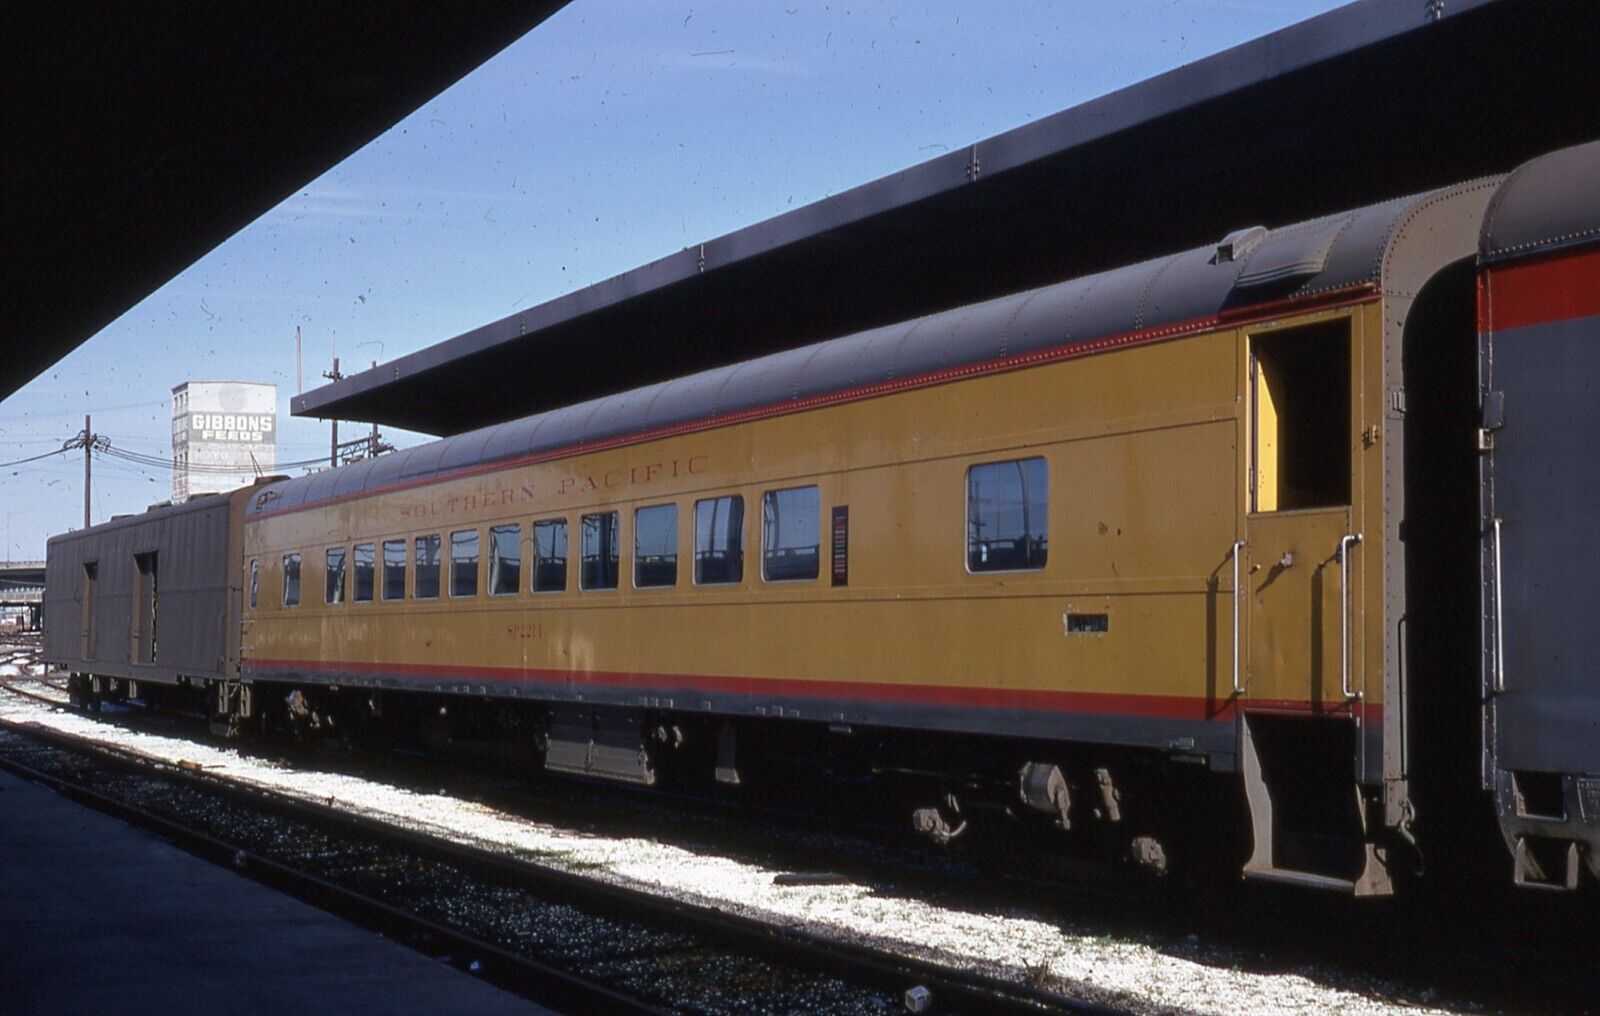 PASSENGER CAR   Southern Pacific #2214  Coach  New Orleans, LA  01/31/70